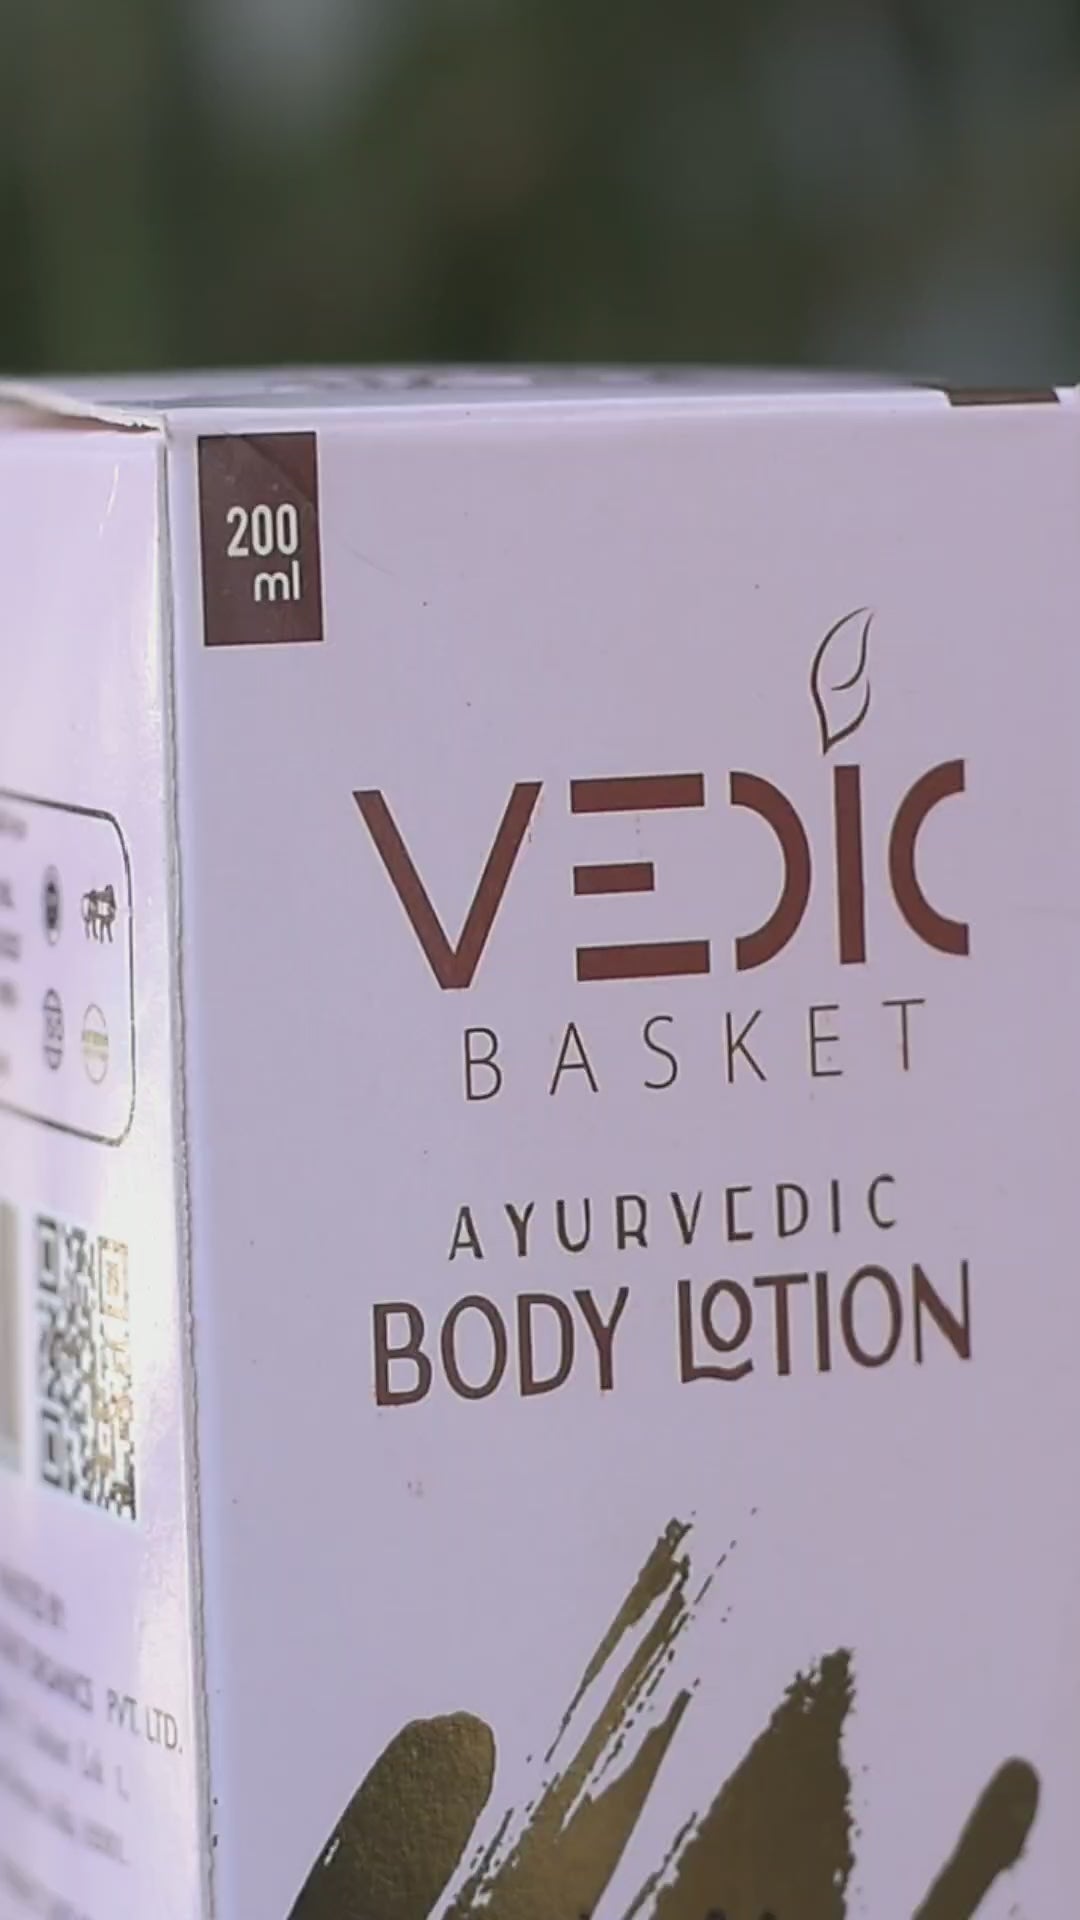 Vedic basket ayurvedic body lotion video